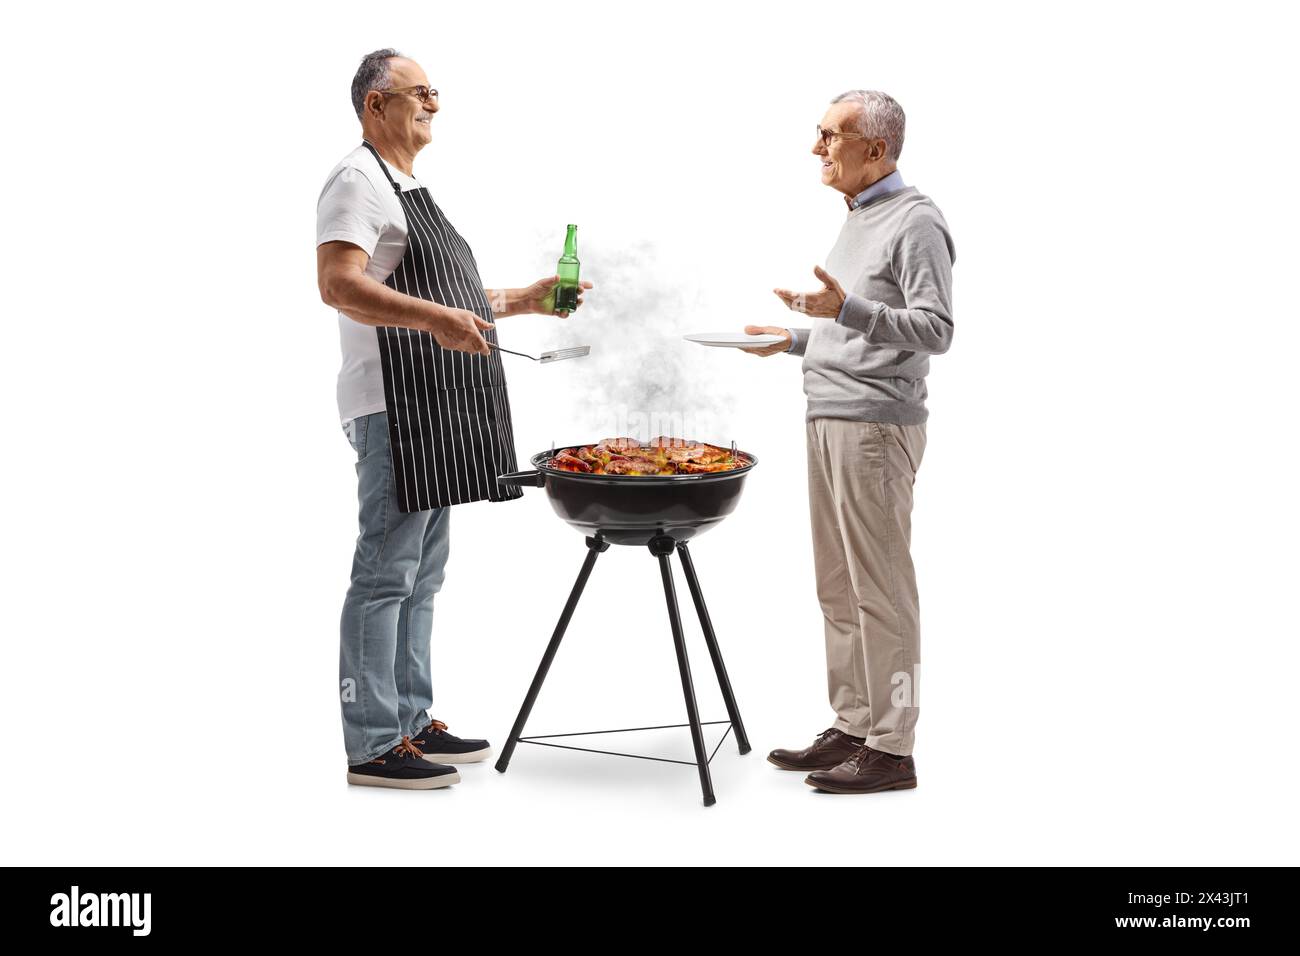 Gli uomini grigliano la carne su un barbecue e parlano isolati su sfondo bianco Foto Stock